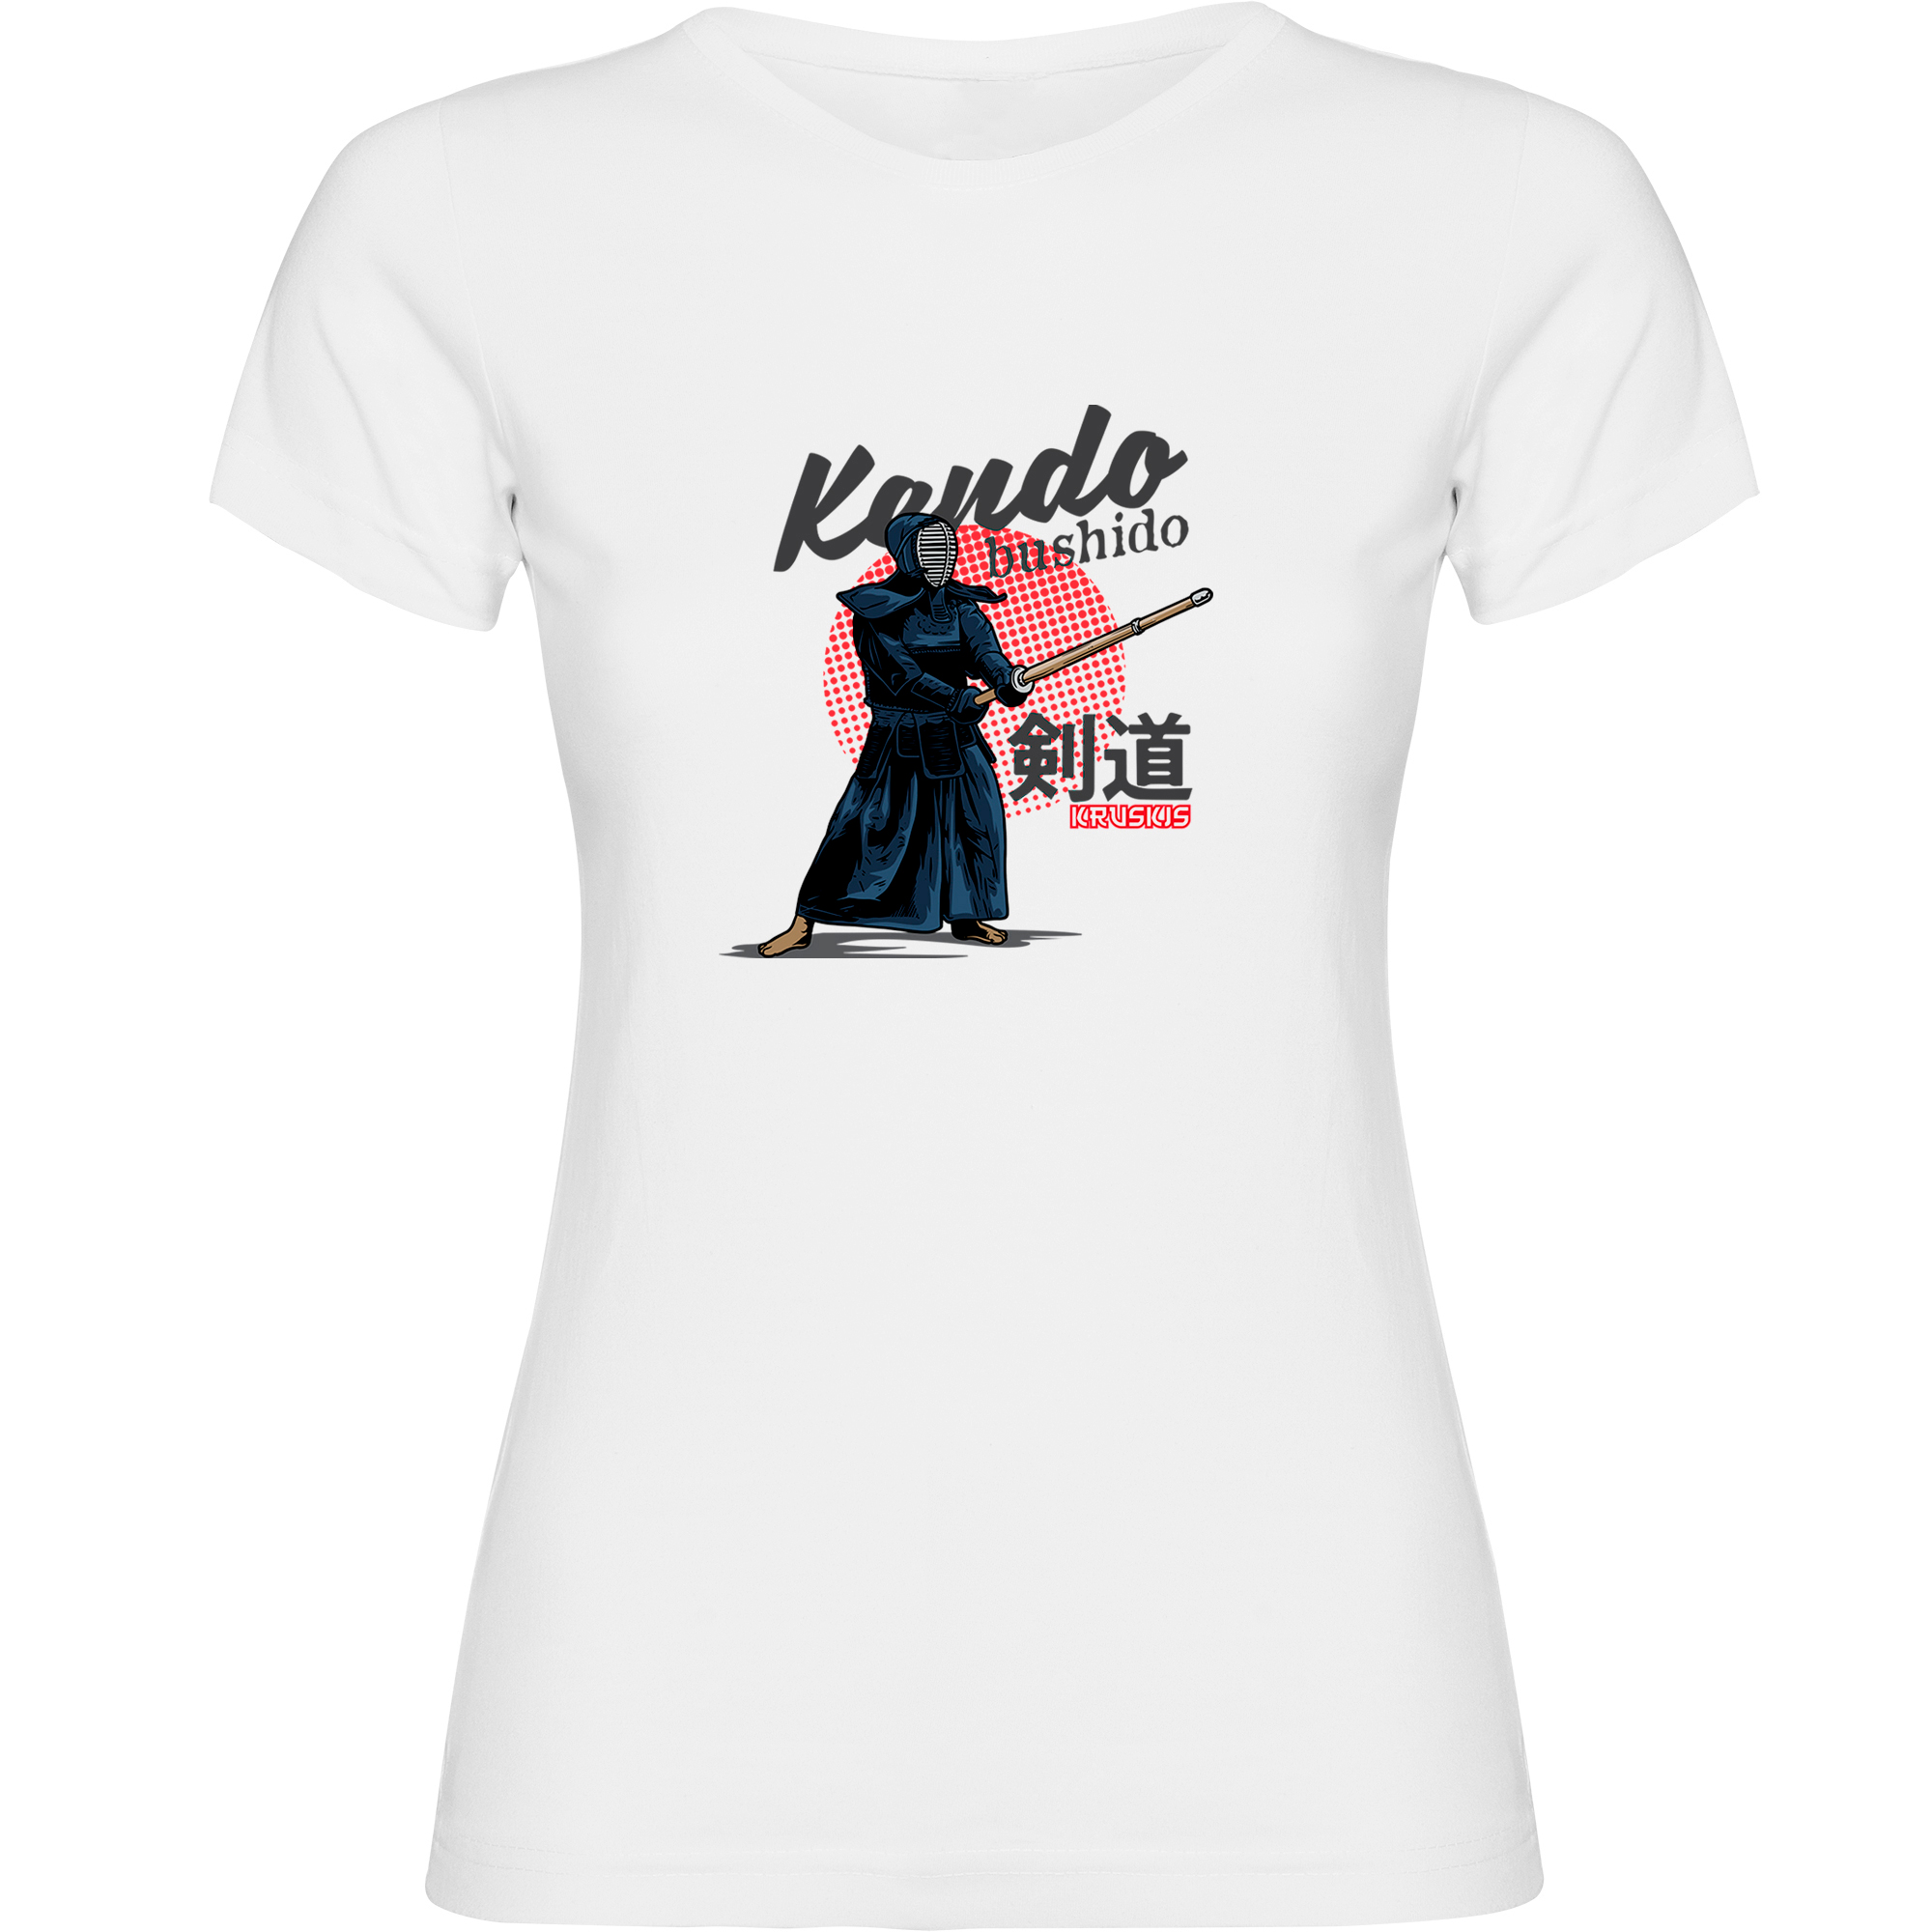 T shirt Kendo Bushido Short Sleeves Woman